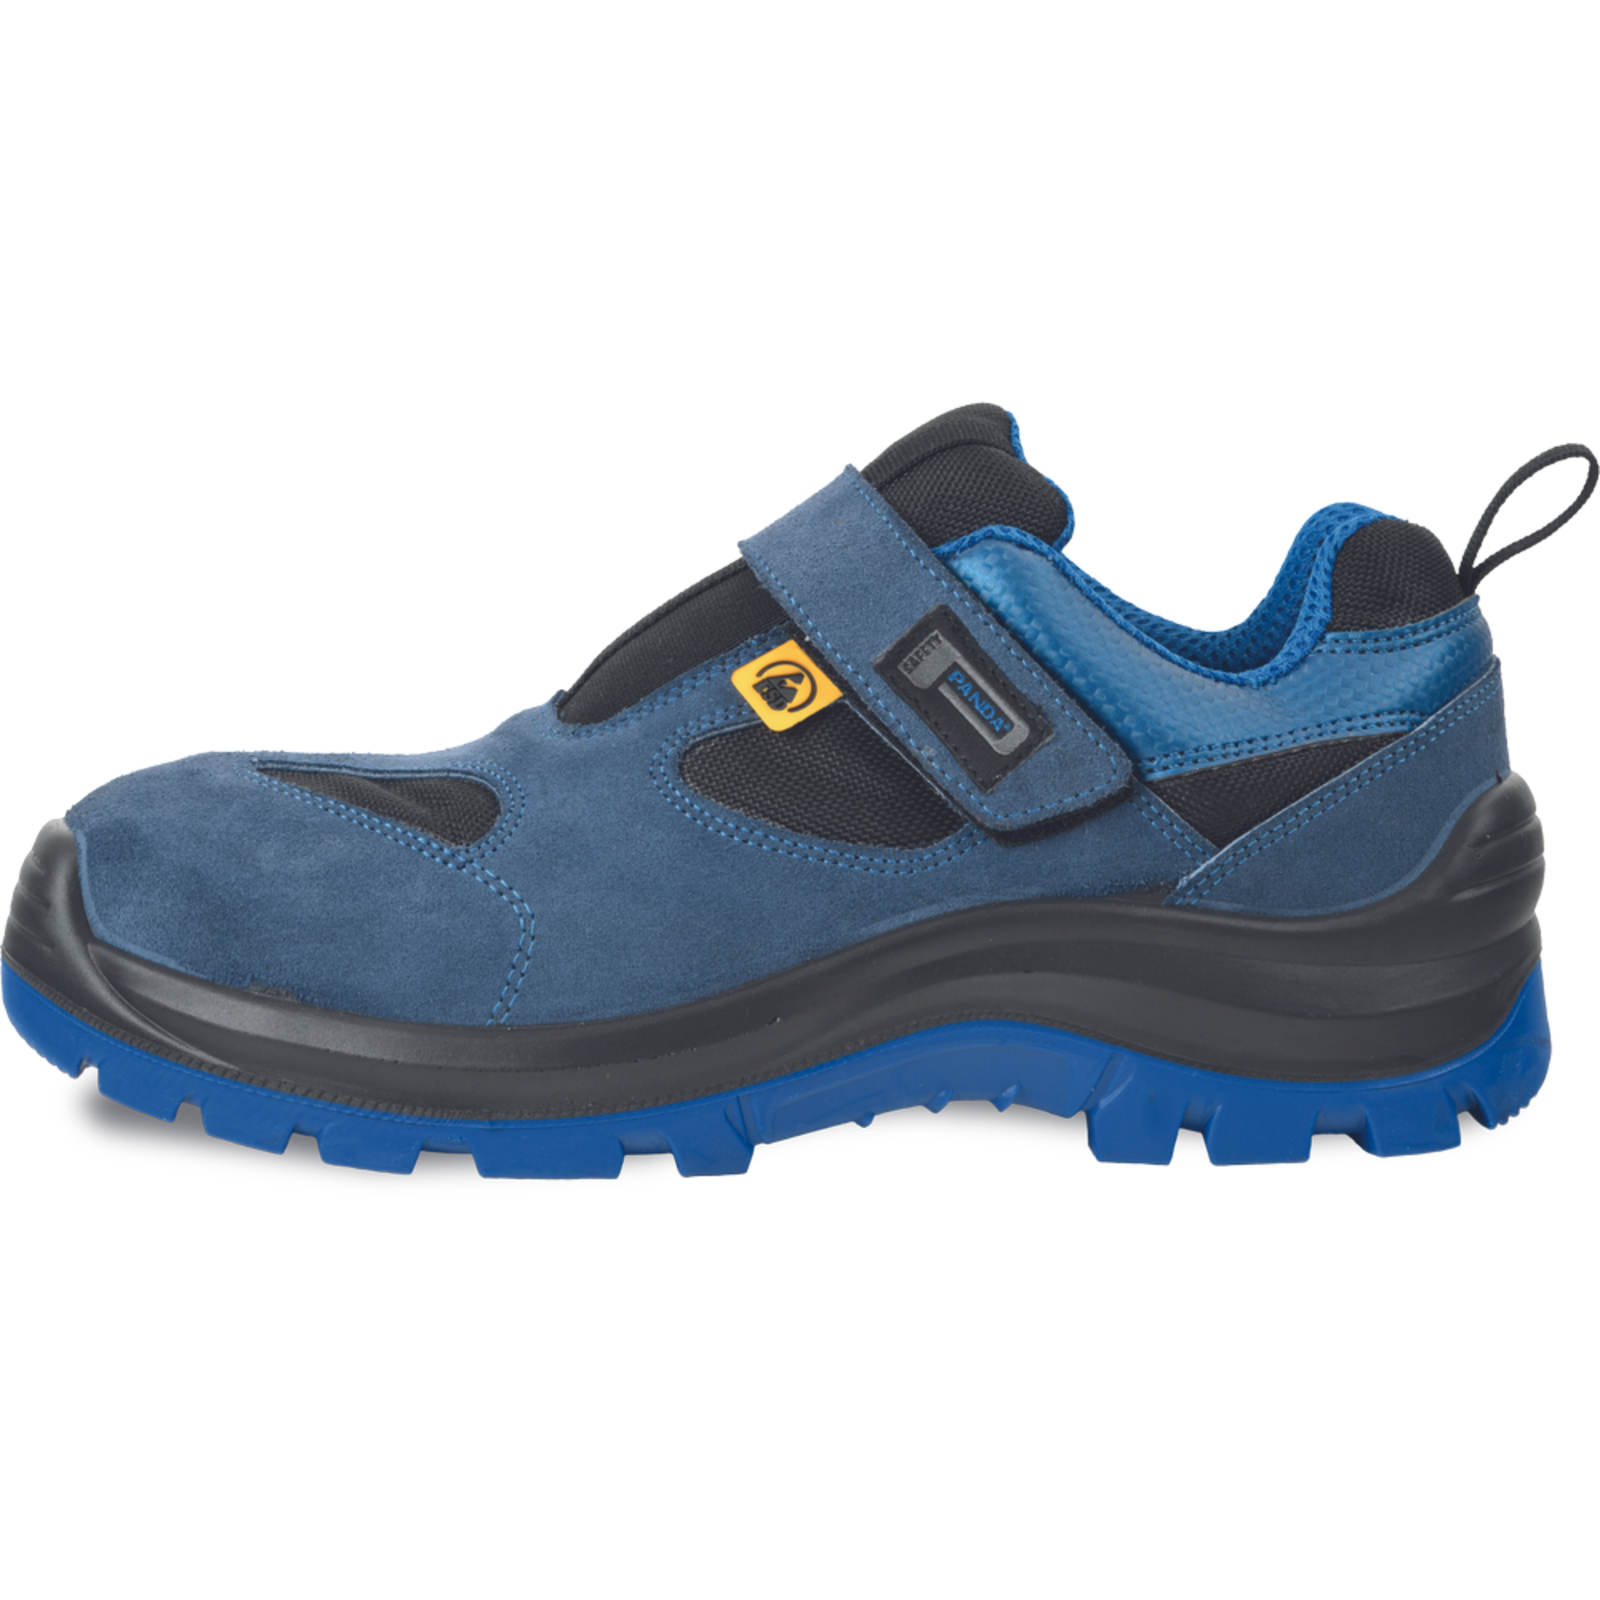 Bezpečnostné pracovné sandále Panda Wilk MF ESD S1P SRC - veľkosť: 42, farba: modrá/čierna